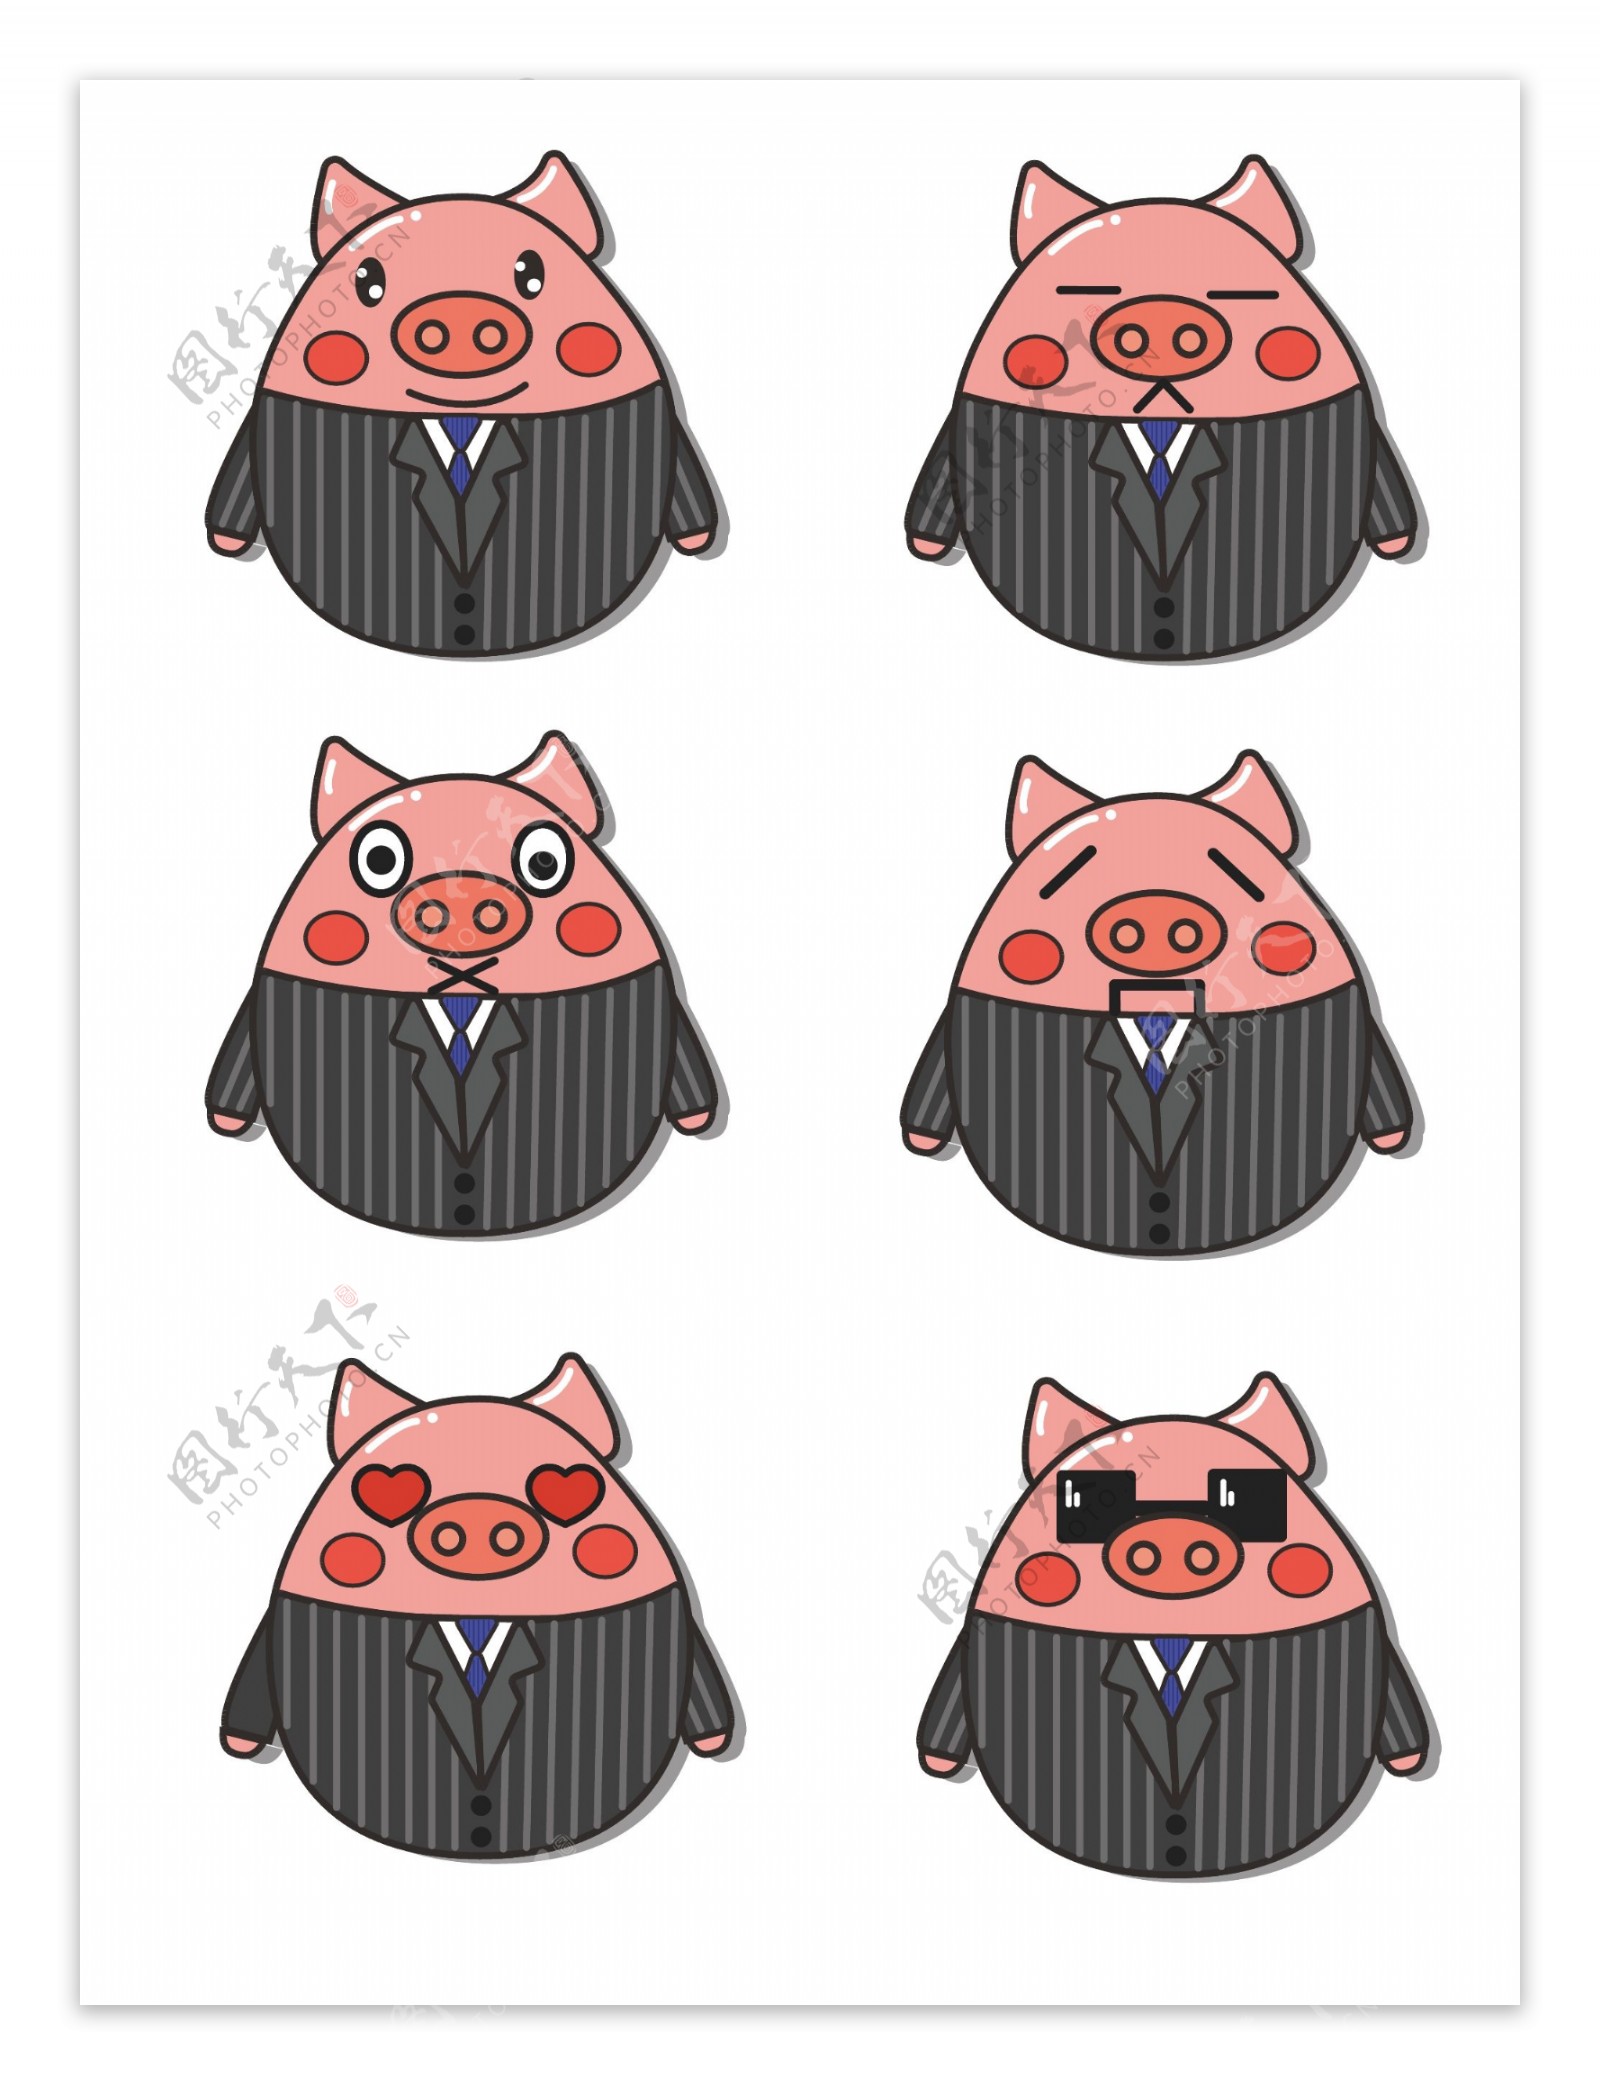 办公猪表情包可商用元素